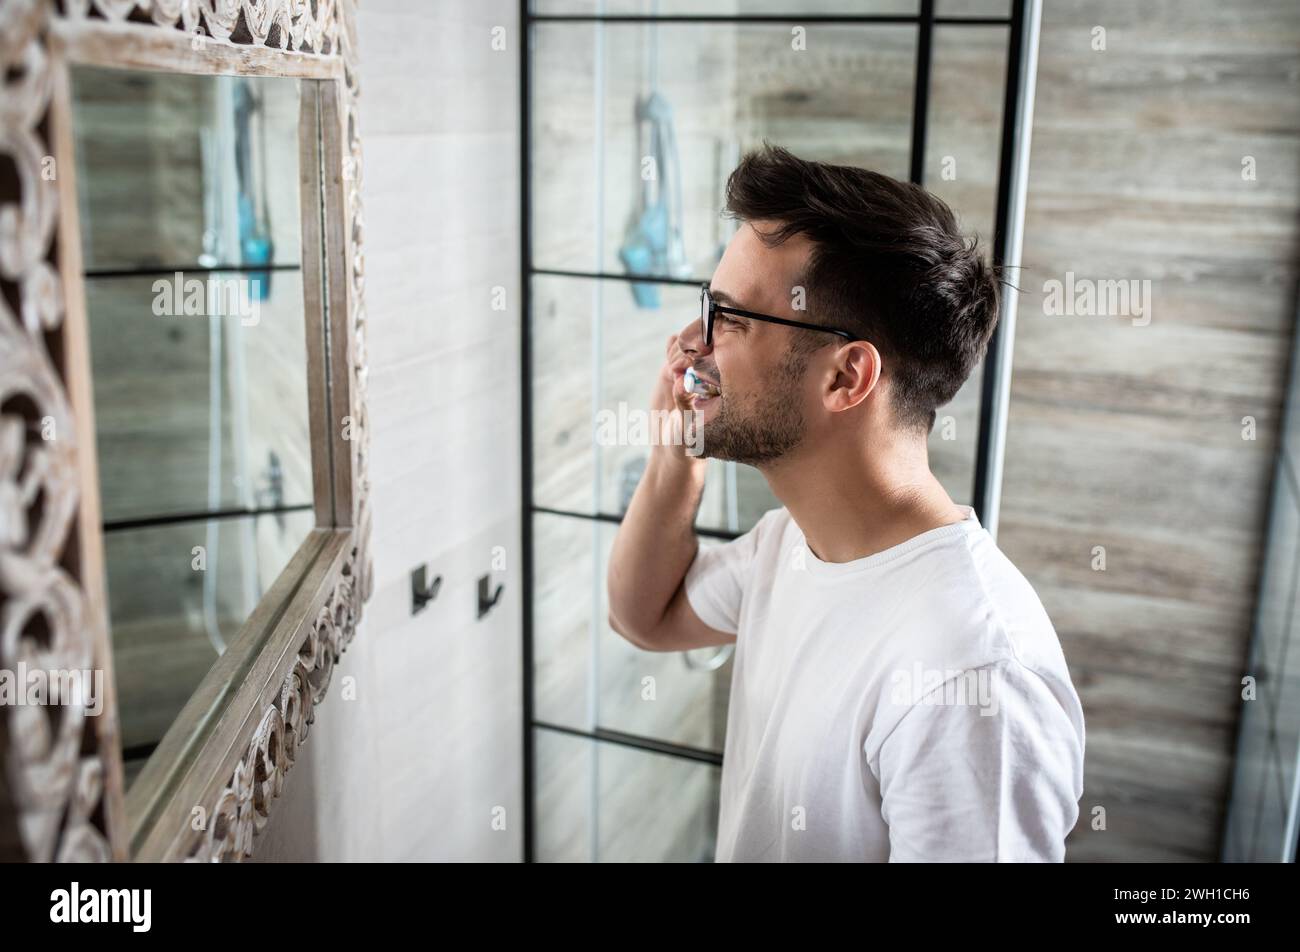 Homme passant par la routine matinale dans la salle de bain se brossant les dents. Banque D'Images